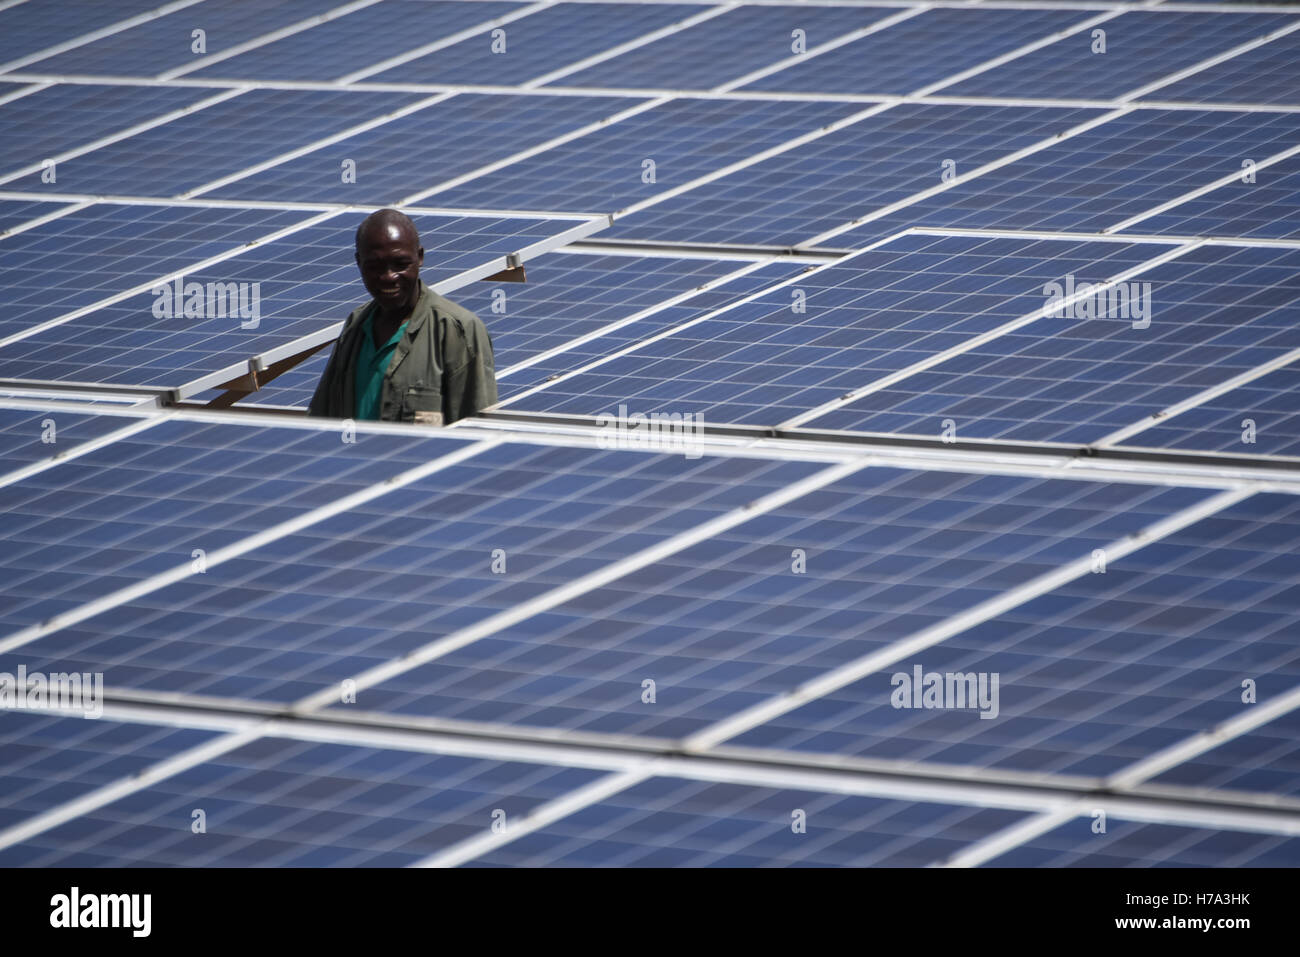 L'électrification rurale et de l'énergie solaire en Afrique subsaharienne. - 04/03/2016 - - Yorosso (Mali) Mars 4th, 2016 : centrale solaire de Yorosso. - Nicolas Remene / Le Pictorium Banque D'Images